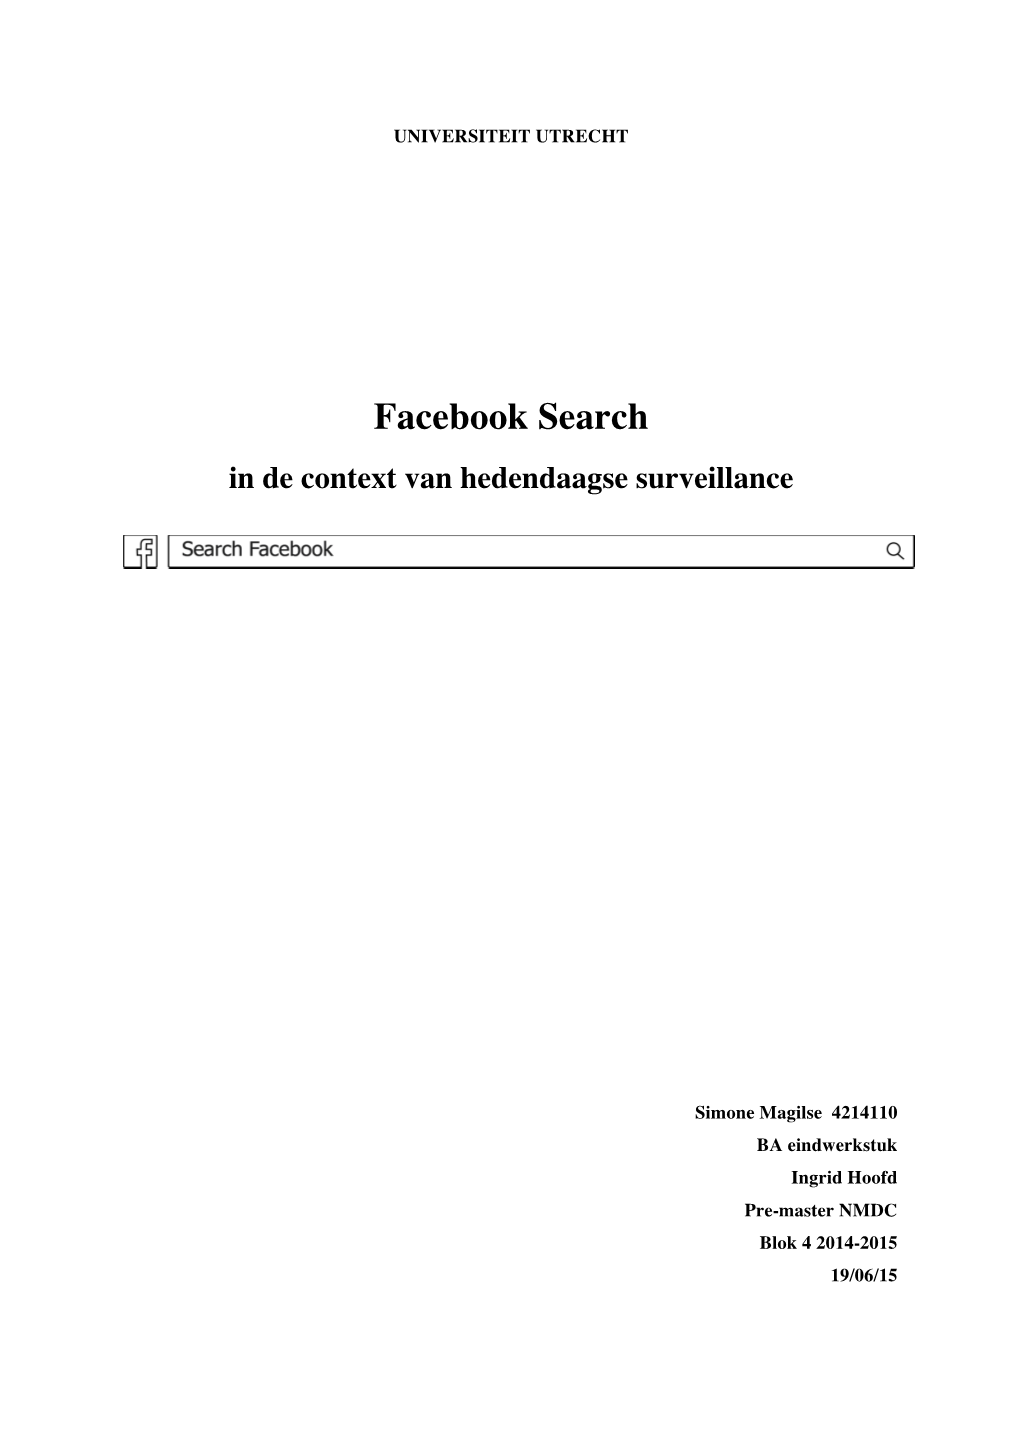 Facebook Search in De Context Van Hedendaagse Surveillance